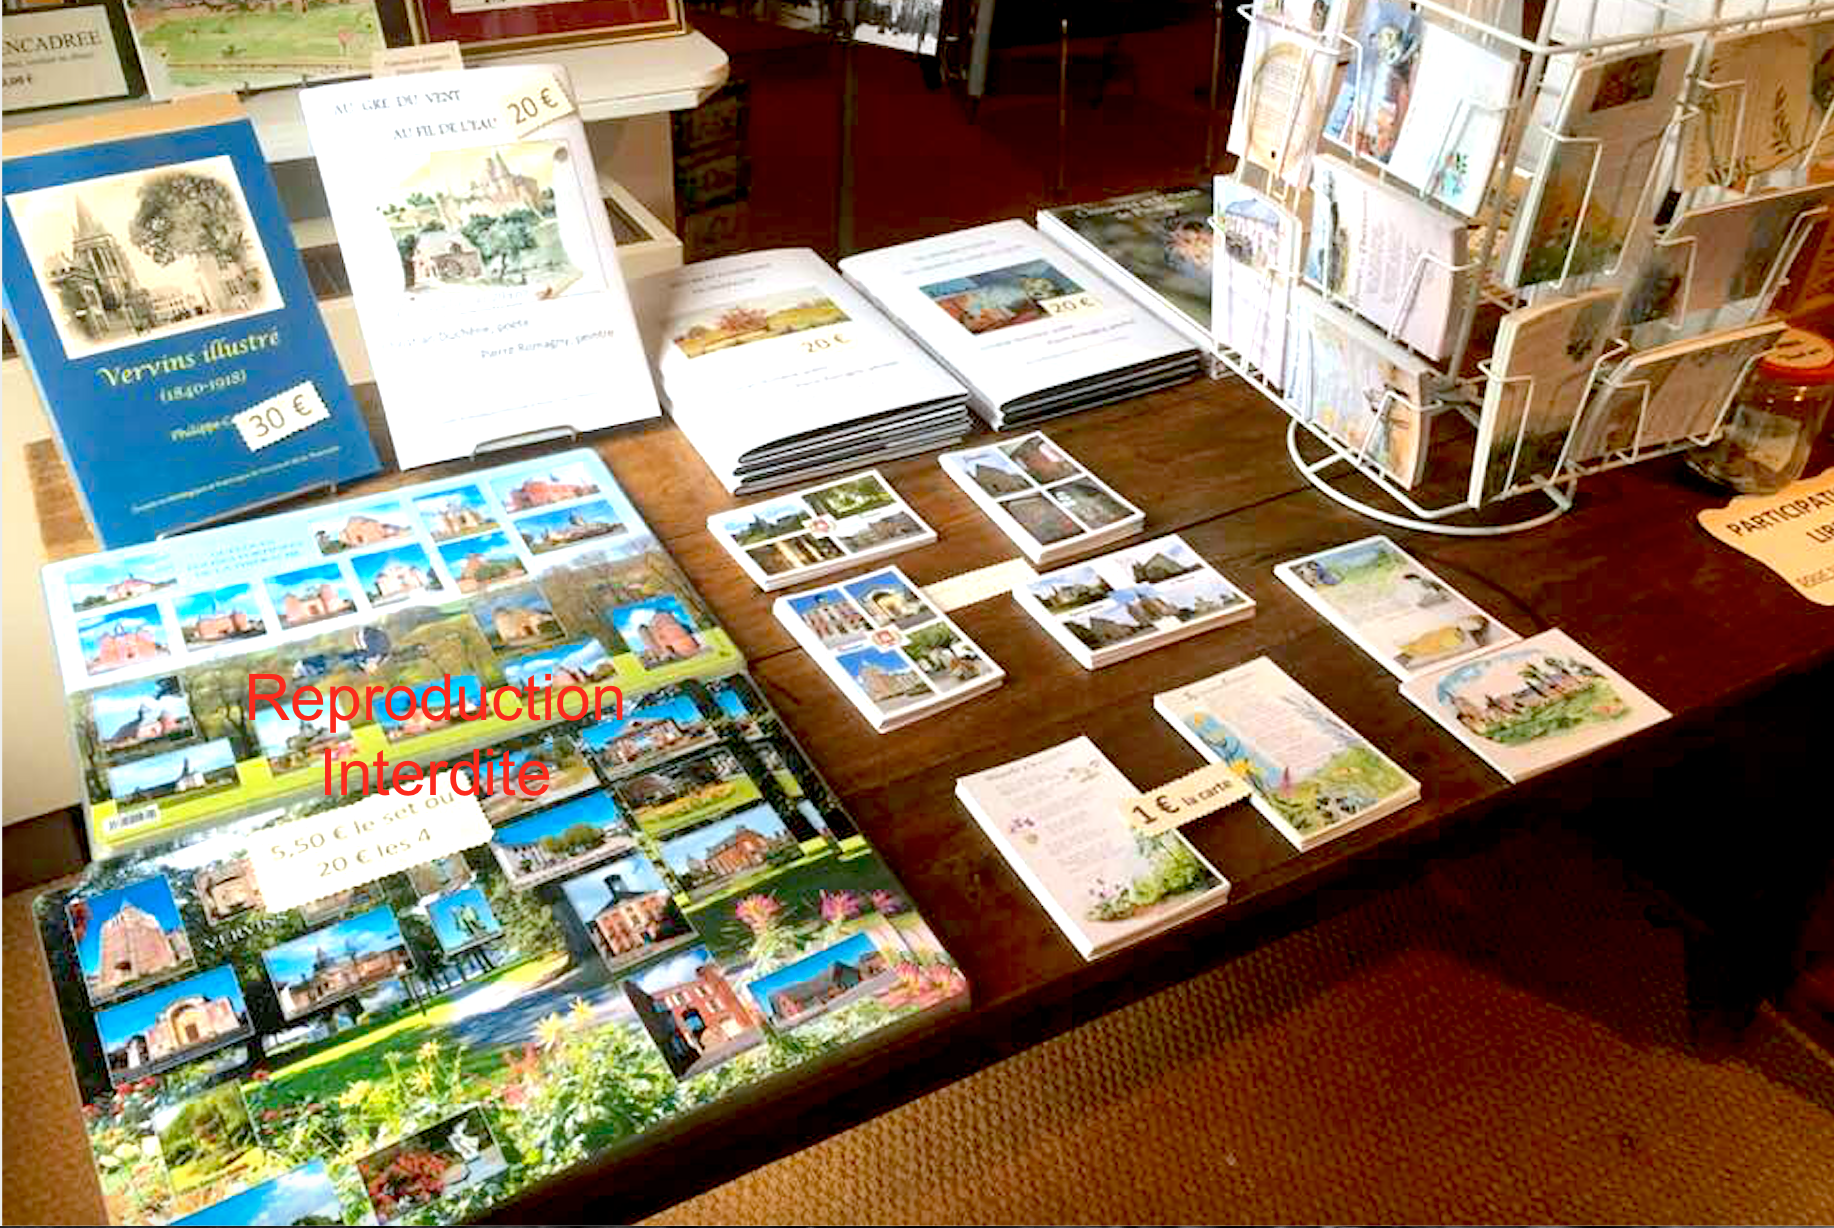 Sets de tables, livres de Romagny-Duchêne, cartes postales...